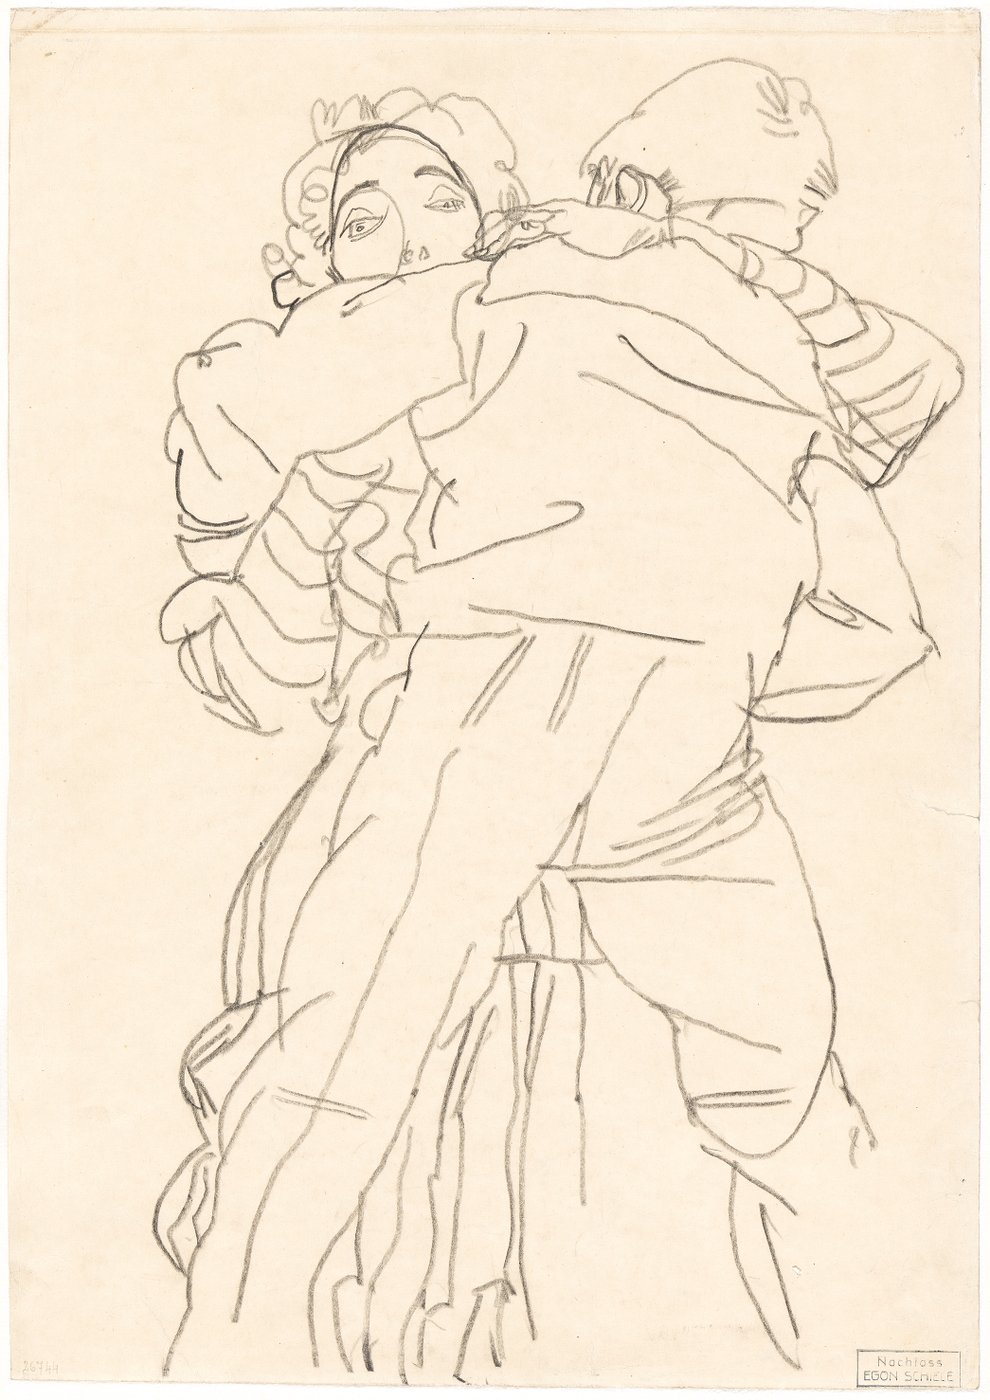 Eine grobe Bleistiftzeichnung, die ein tanzendes Paar von Kopf bis zum Schienbein zeigt. Dabei ist ein Mann mit dem Rücken zu uns abgebildet. Ihn umarmt eine Frau, deren Gesicht über seine Schulter gut zu erkennen ist. Ihr Blick ist direkt auf den Betrachter gerichtet.